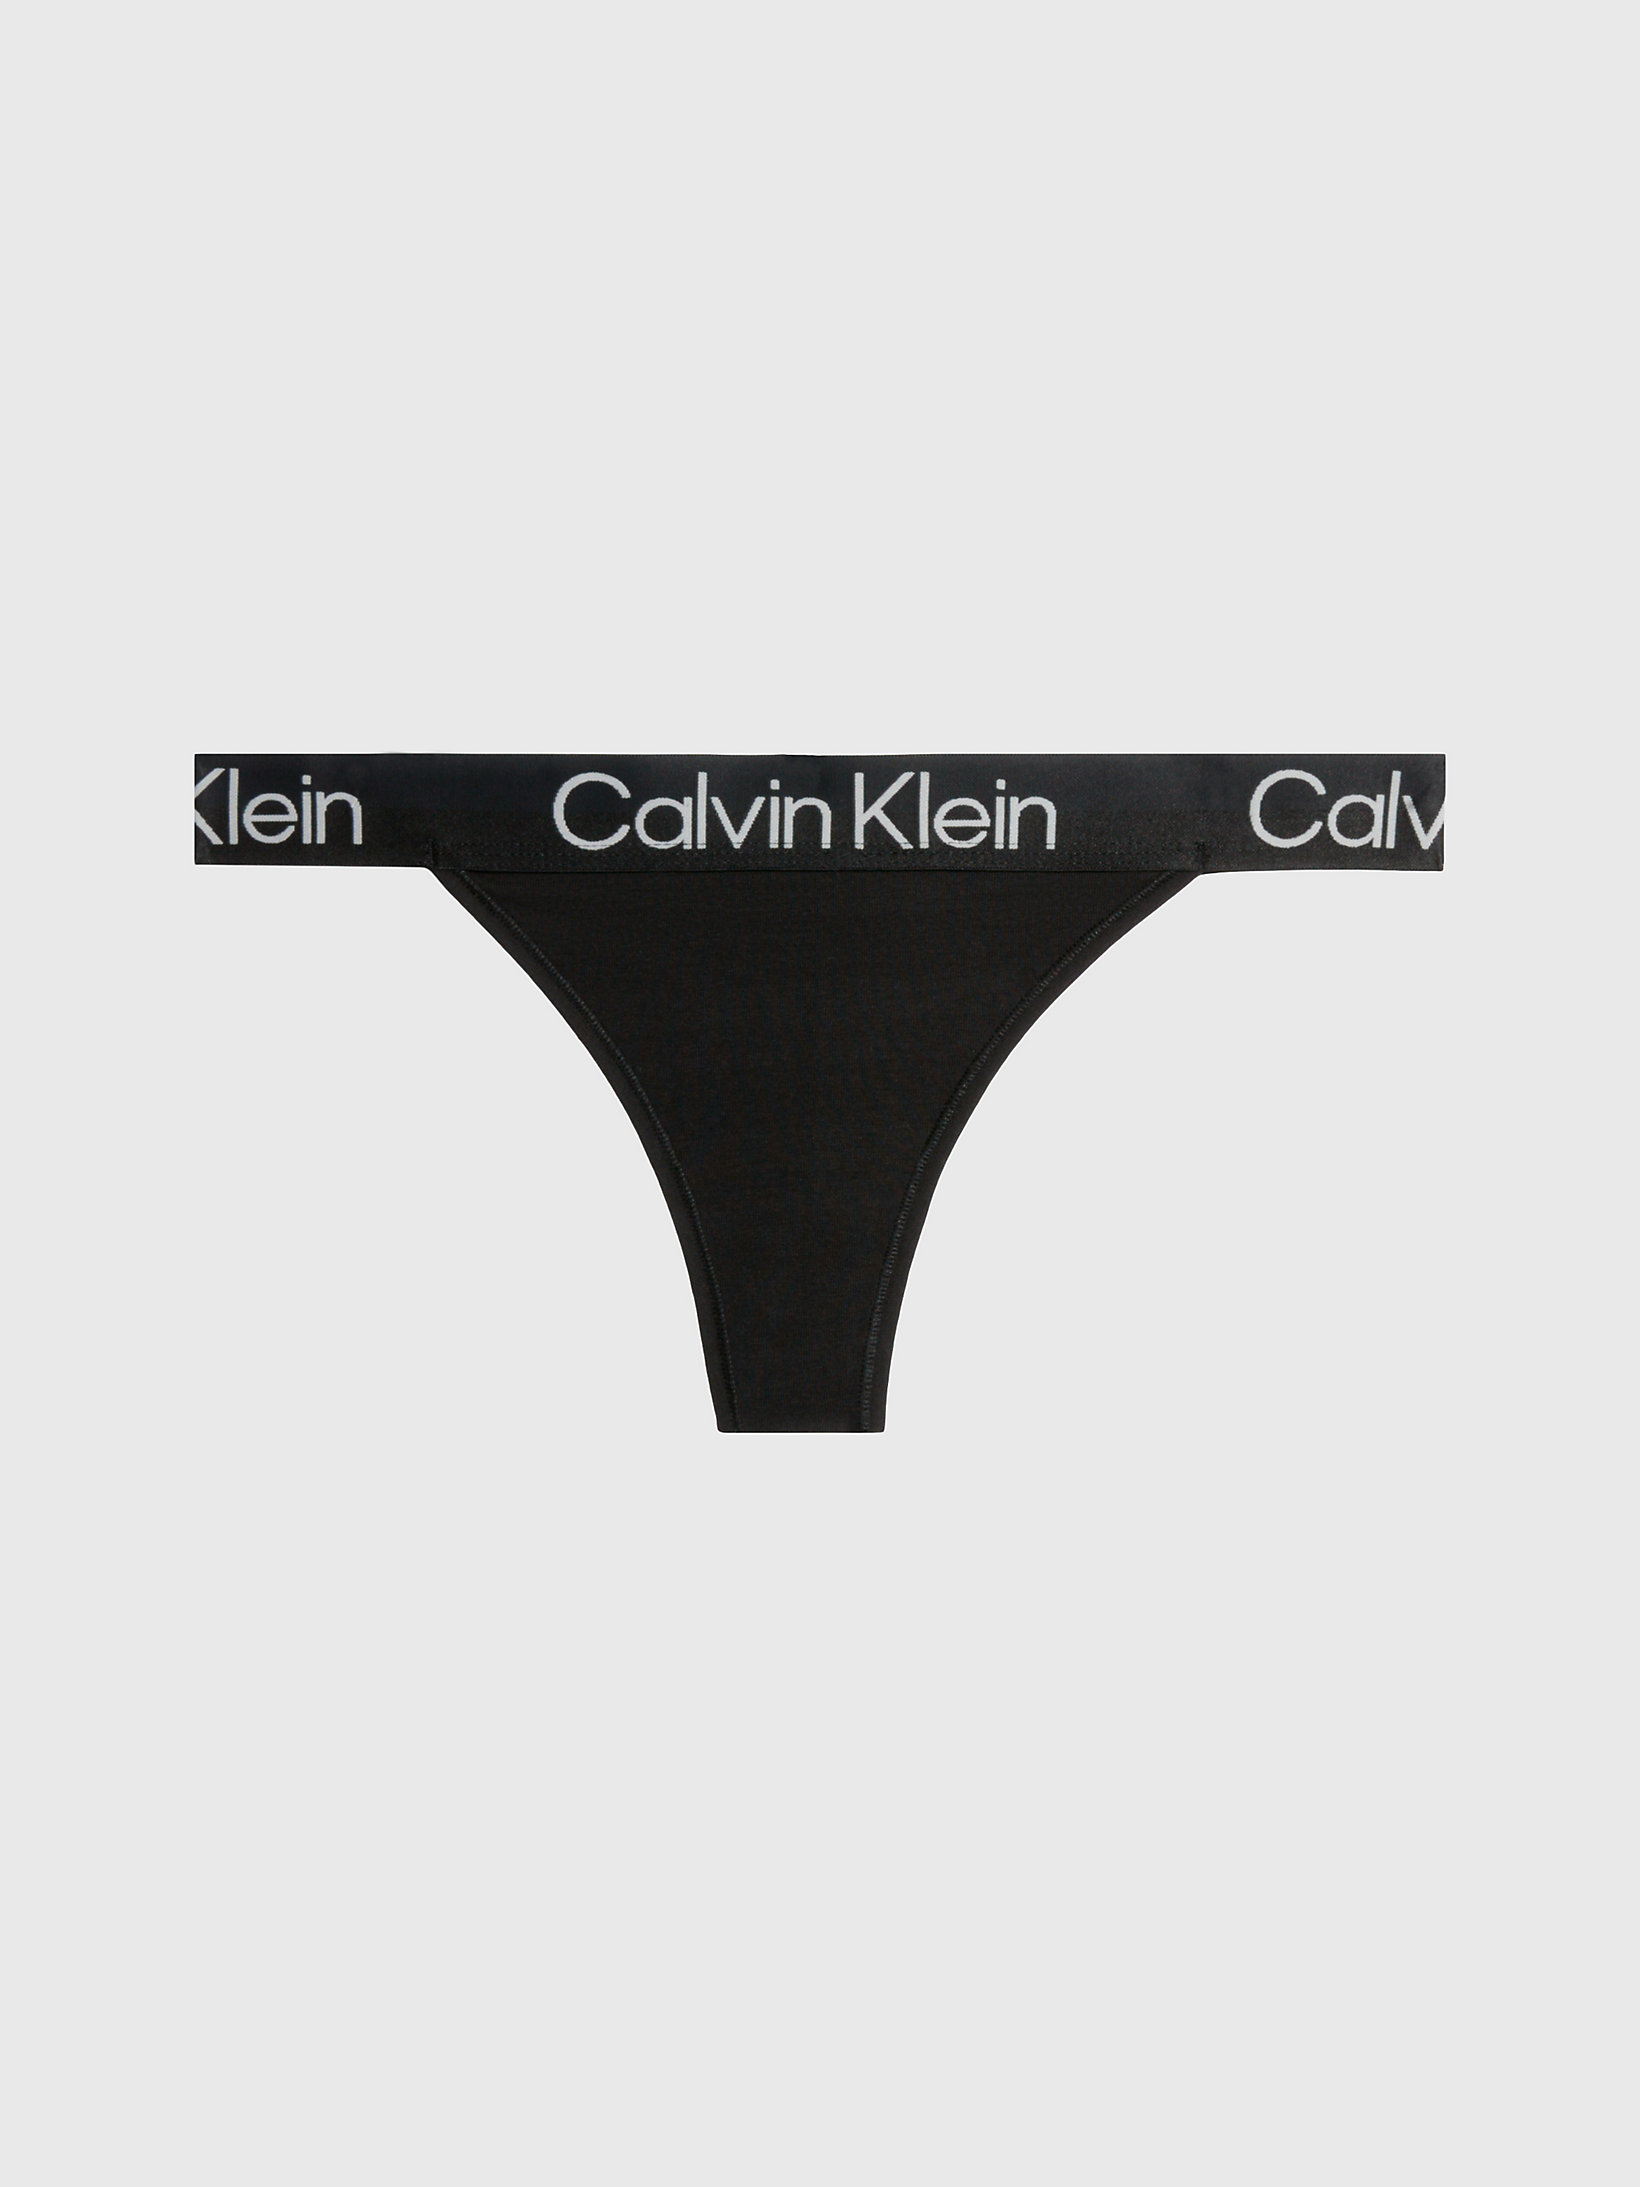 Klein calvin Calvin Klein